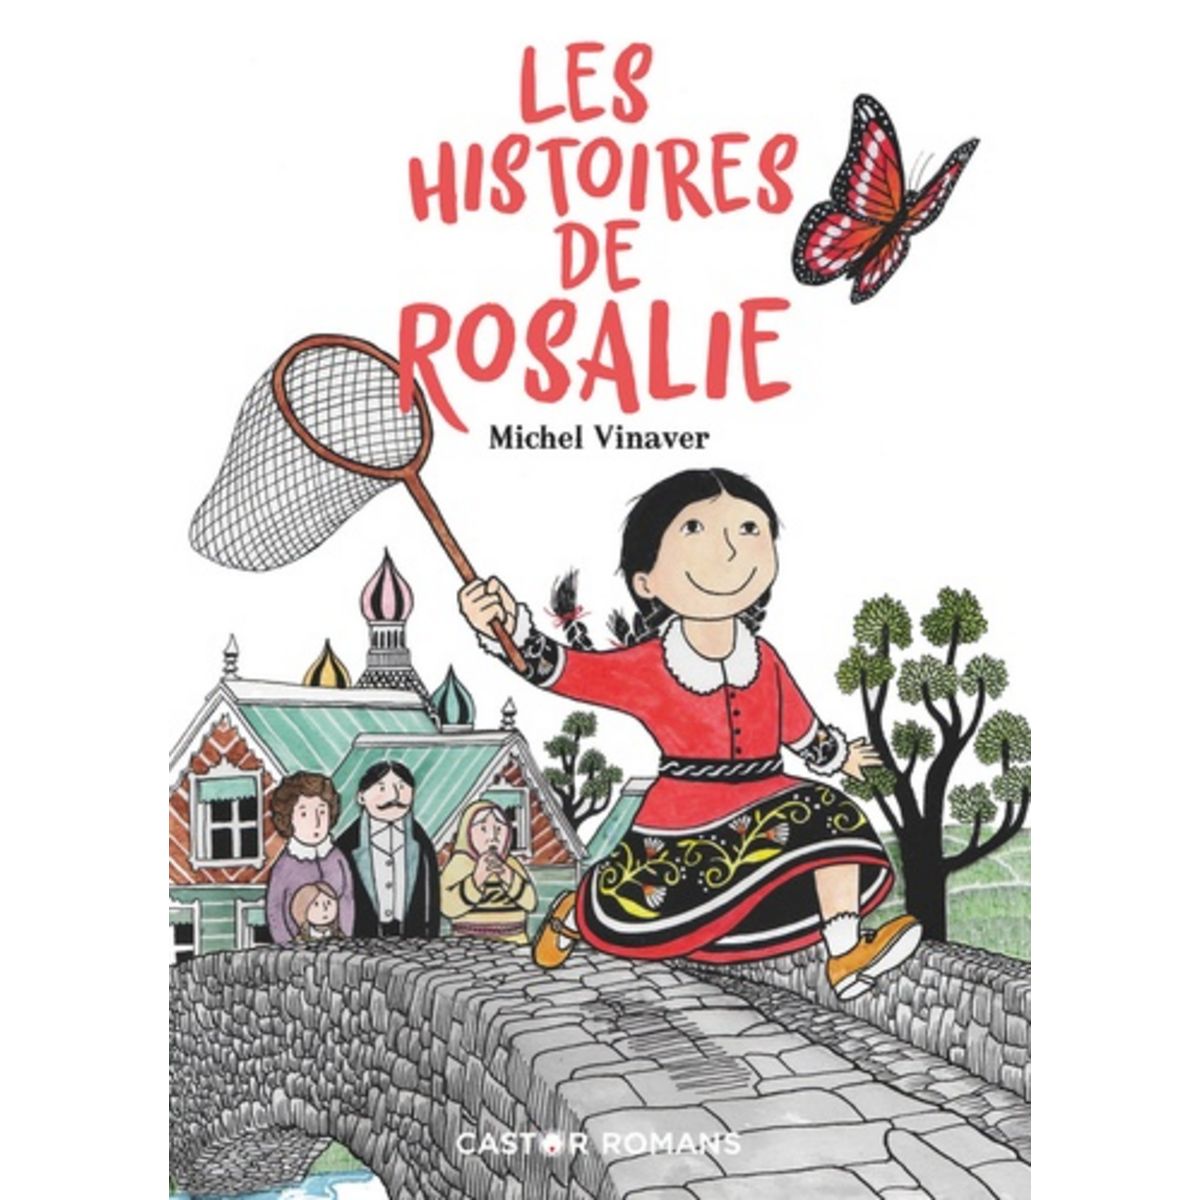  LES HISTOIRES DE ROSALIE, Vinaver Michel